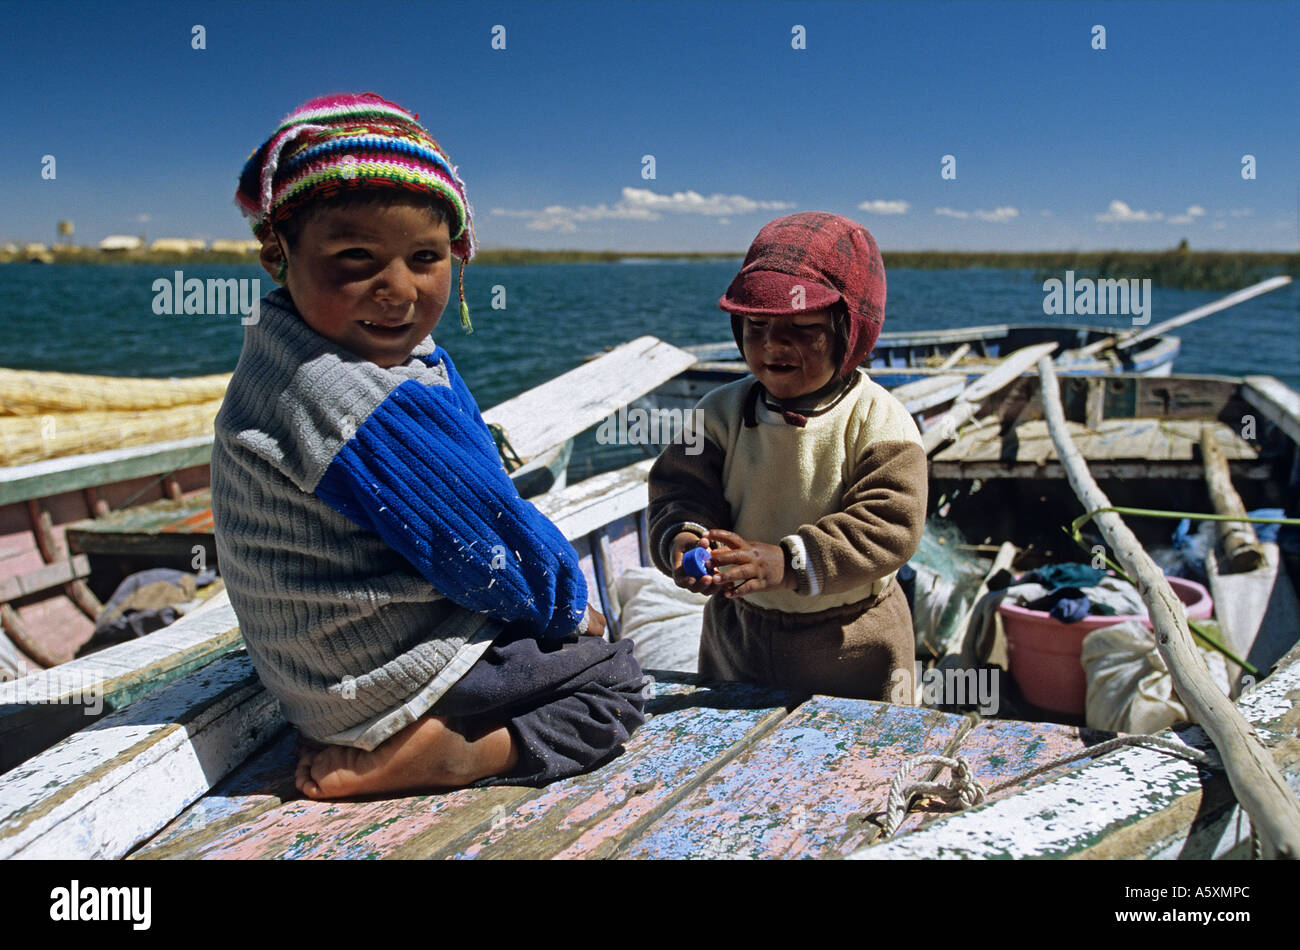 Les enfants péruviens sur une embarcation sur le lac Titicaca (Pérou). Gamins sur une barque du lac Titicaca (Pérou). Banque D'Images